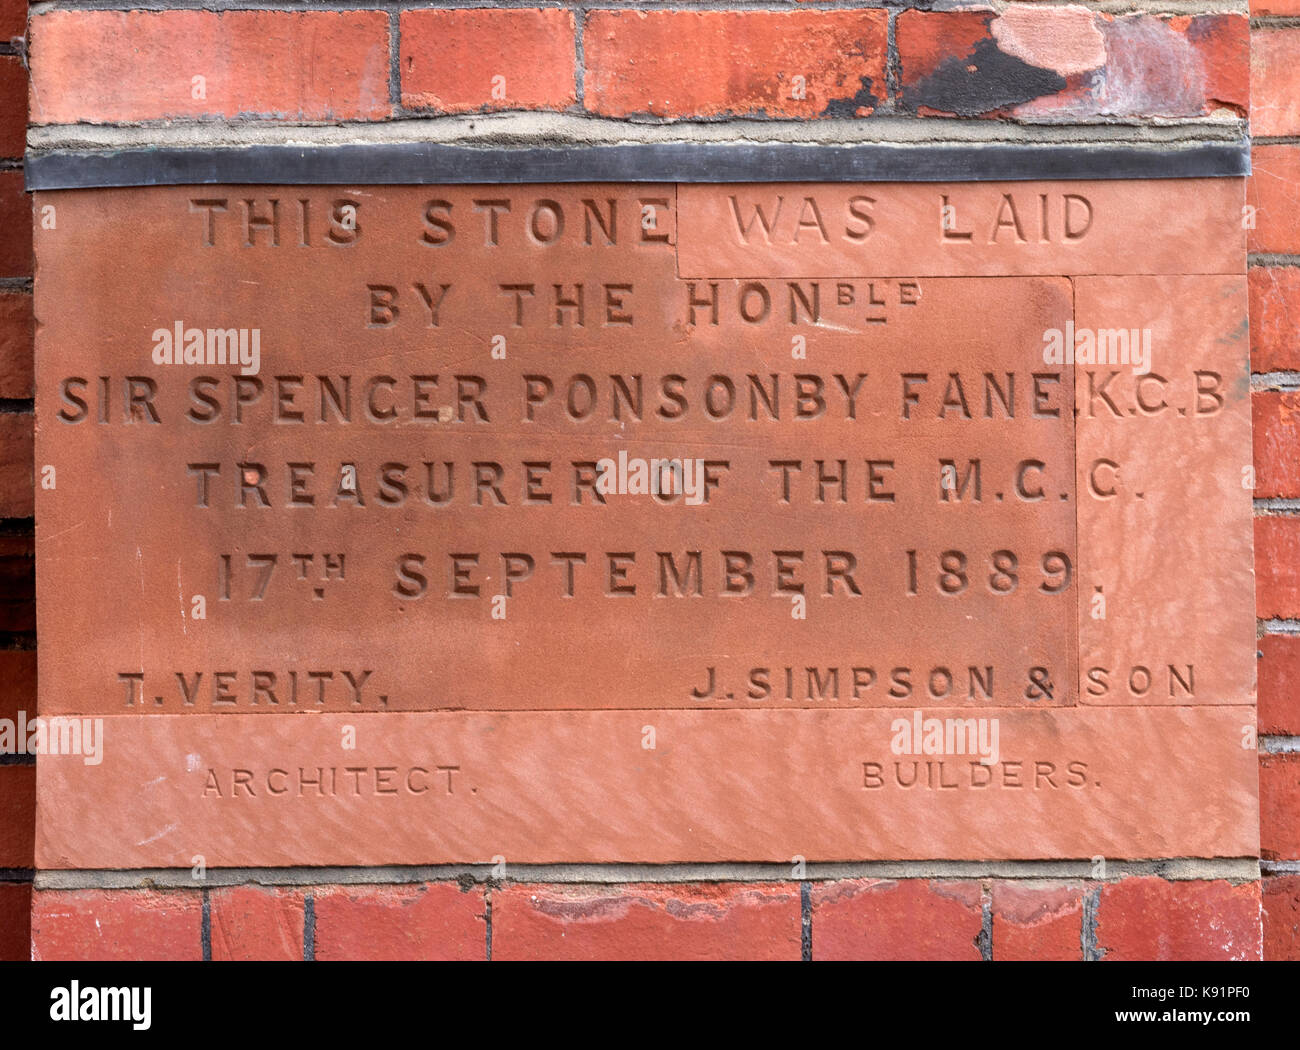 Pierre commémorative de sir spencer ponsonby fane ancien trésorier de la m.c.c. du Lords Cricket Ground, St John's Wood, Londres, Angleterre, Royaume-Uni Banque D'Images